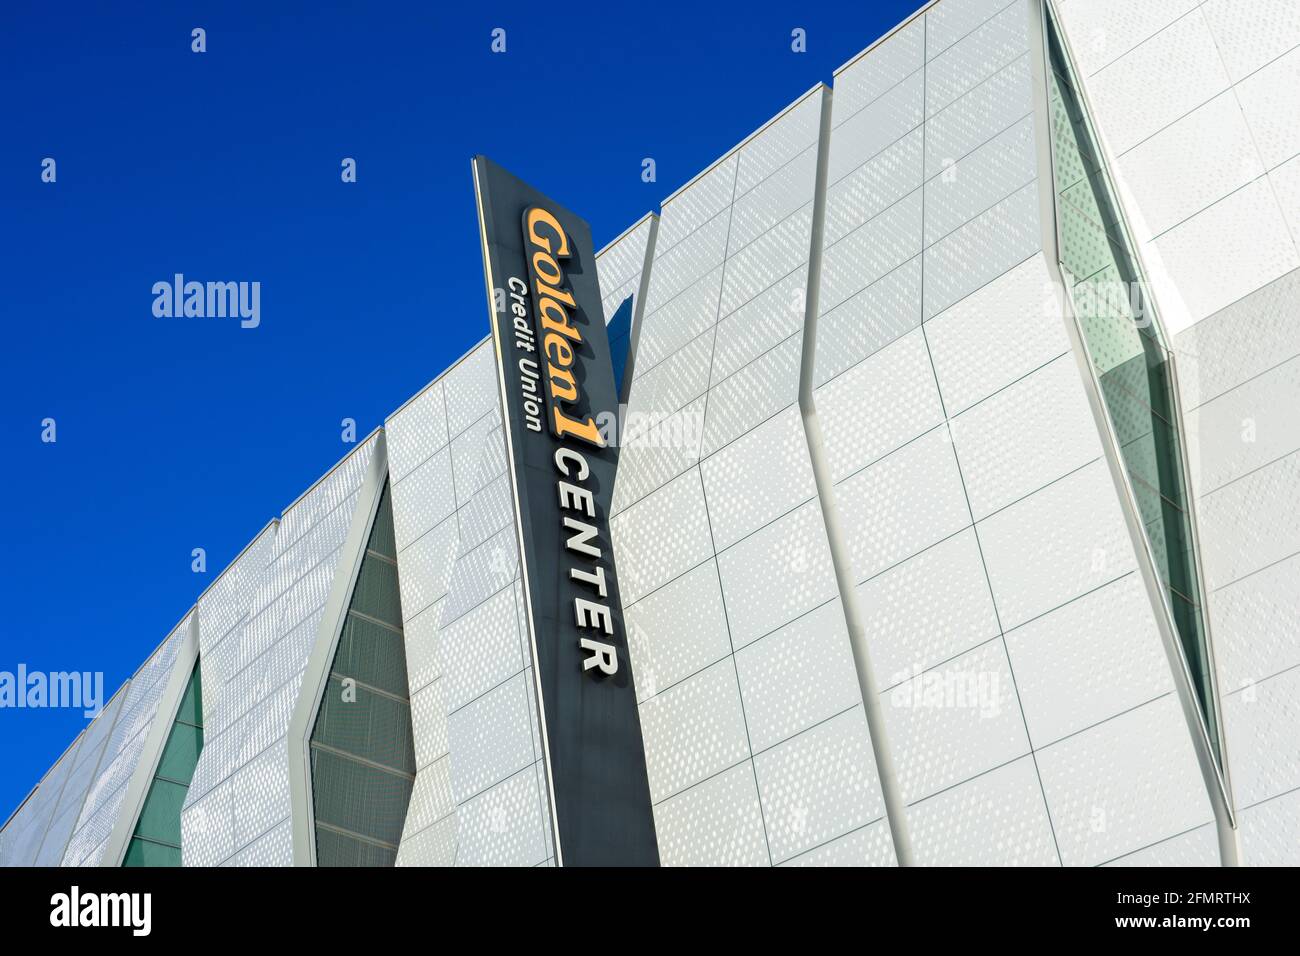 A View of Golden 1 Center in Sacramento, California Stock Photo